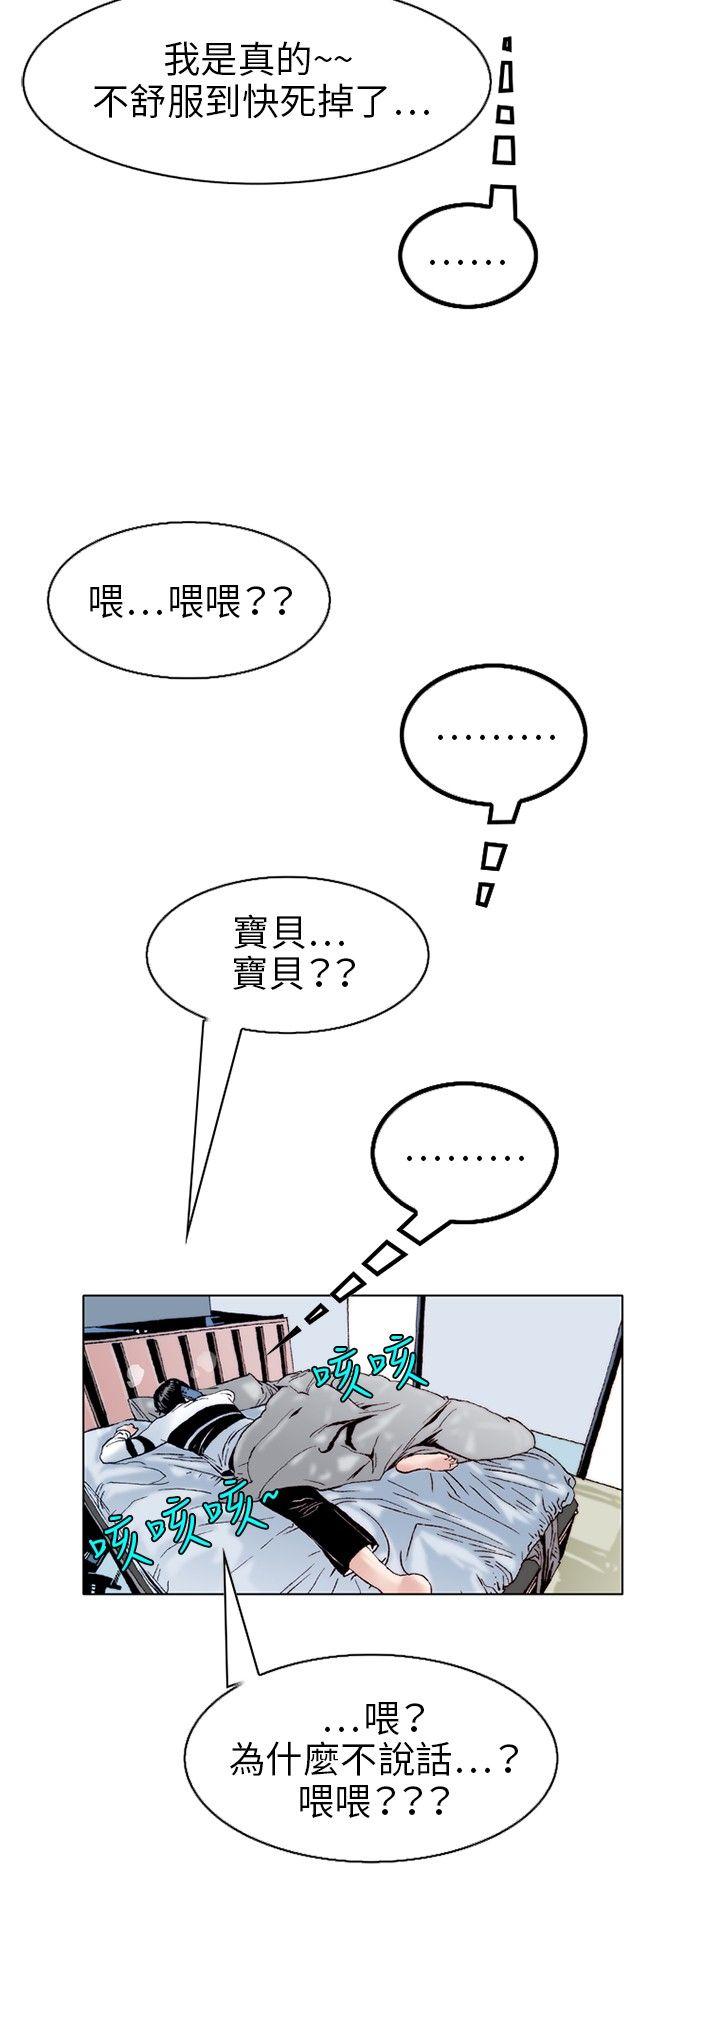 秘密Story  性爱奴隶(1) 漫画图片3.jpg